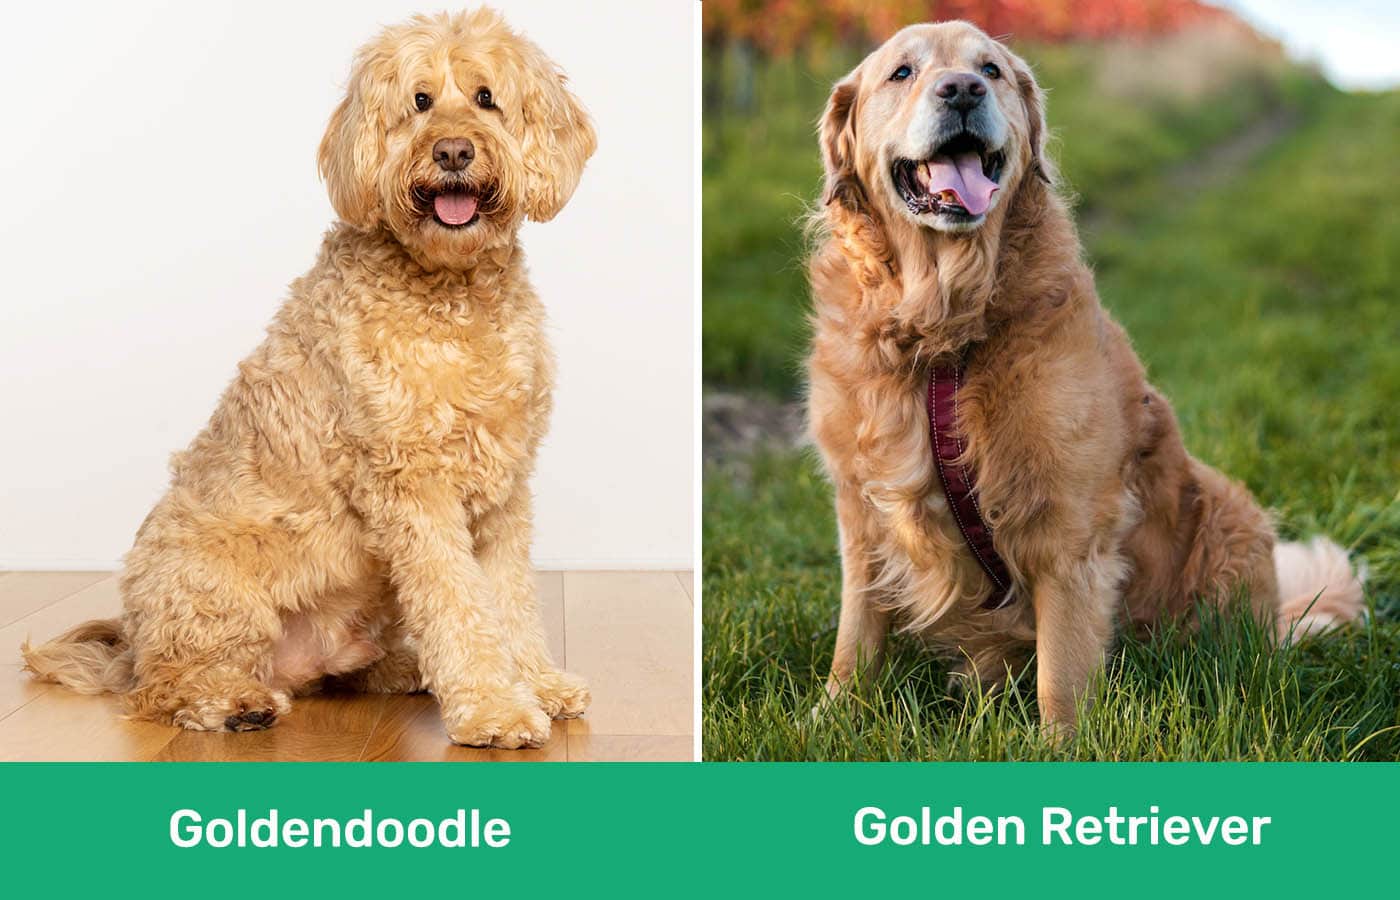 Goldendoodle vs Golden Retriever side by side